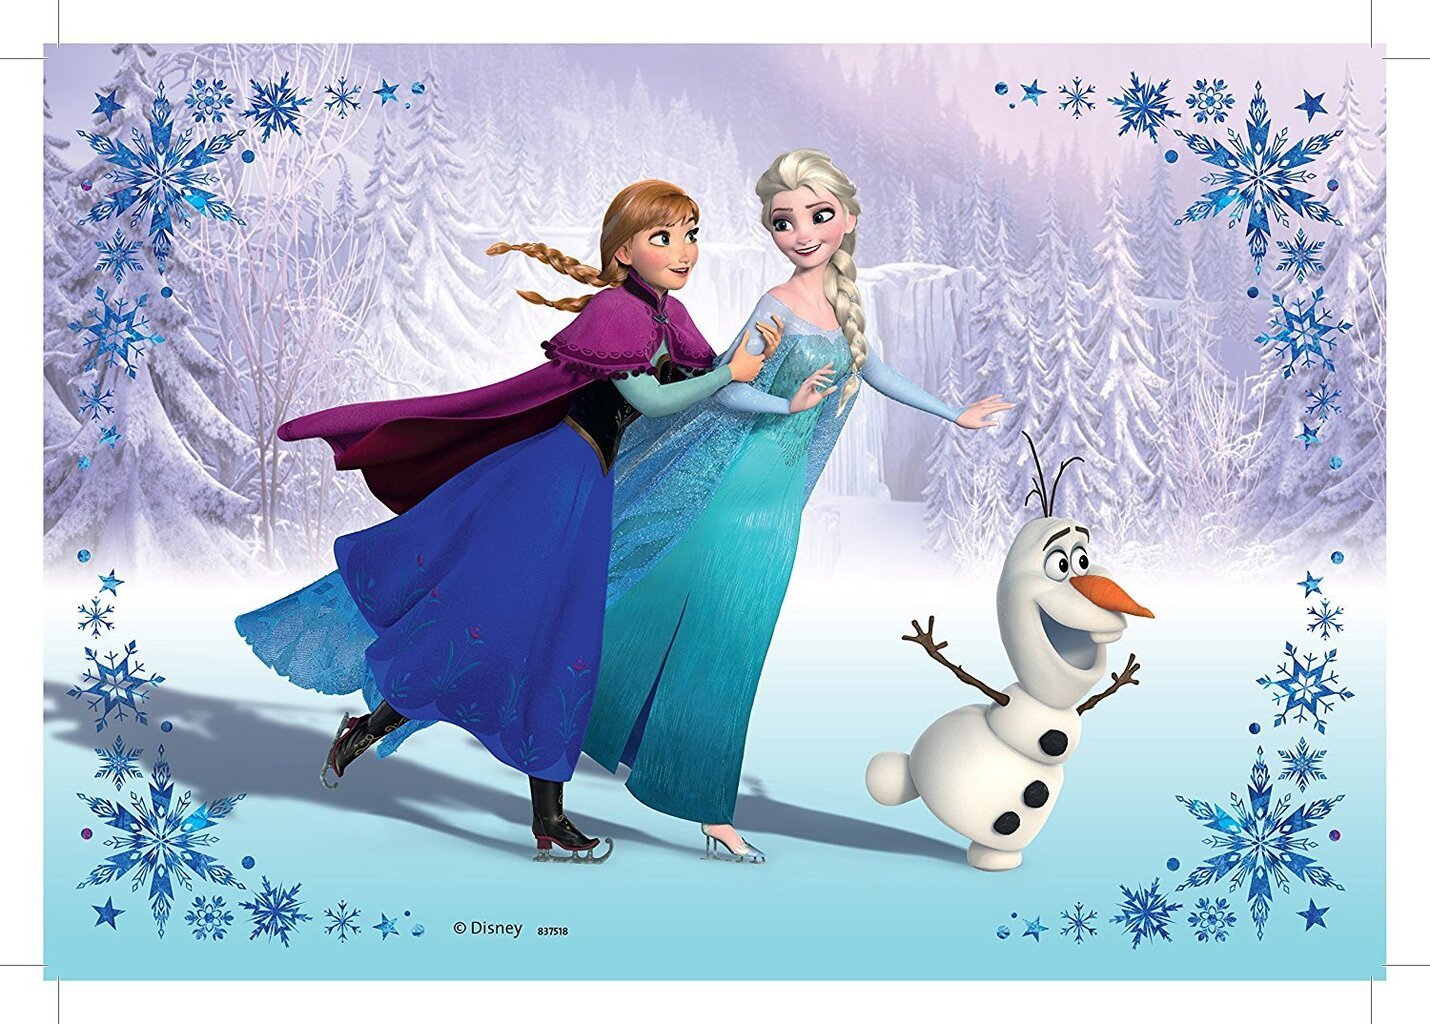 Dėlionių rinkinys Ravensburger Ledo šalis (Frozen) Seserys 2x24 detalės, 091157 kaina ir informacija | Dėlionės (puzzle) | pigu.lt